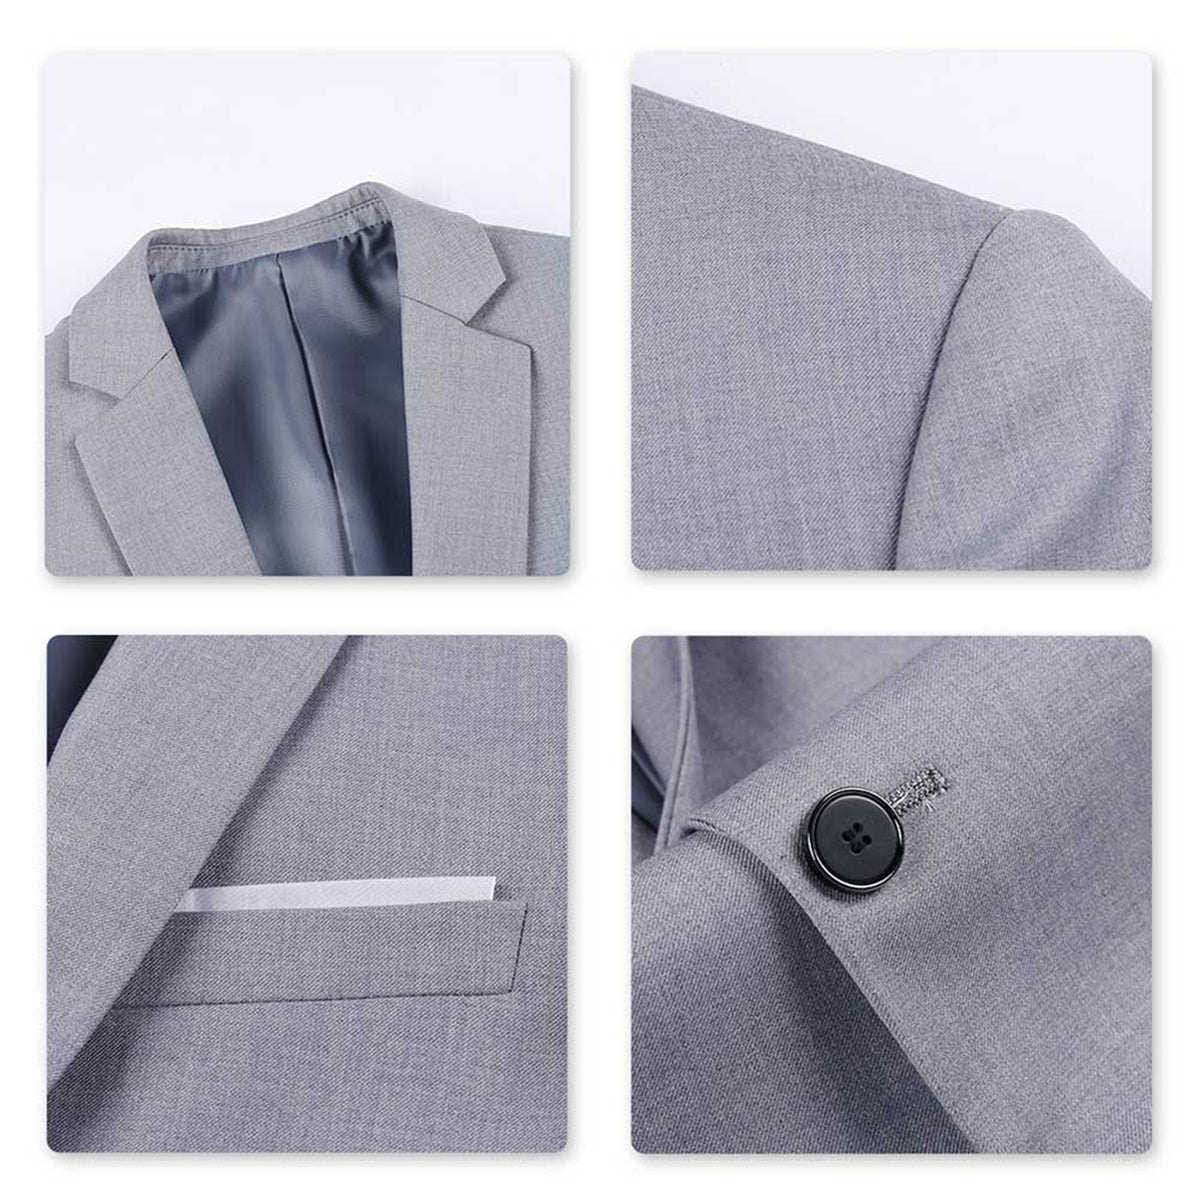 Classic Light Grey Blazer Two Buttons Blazer